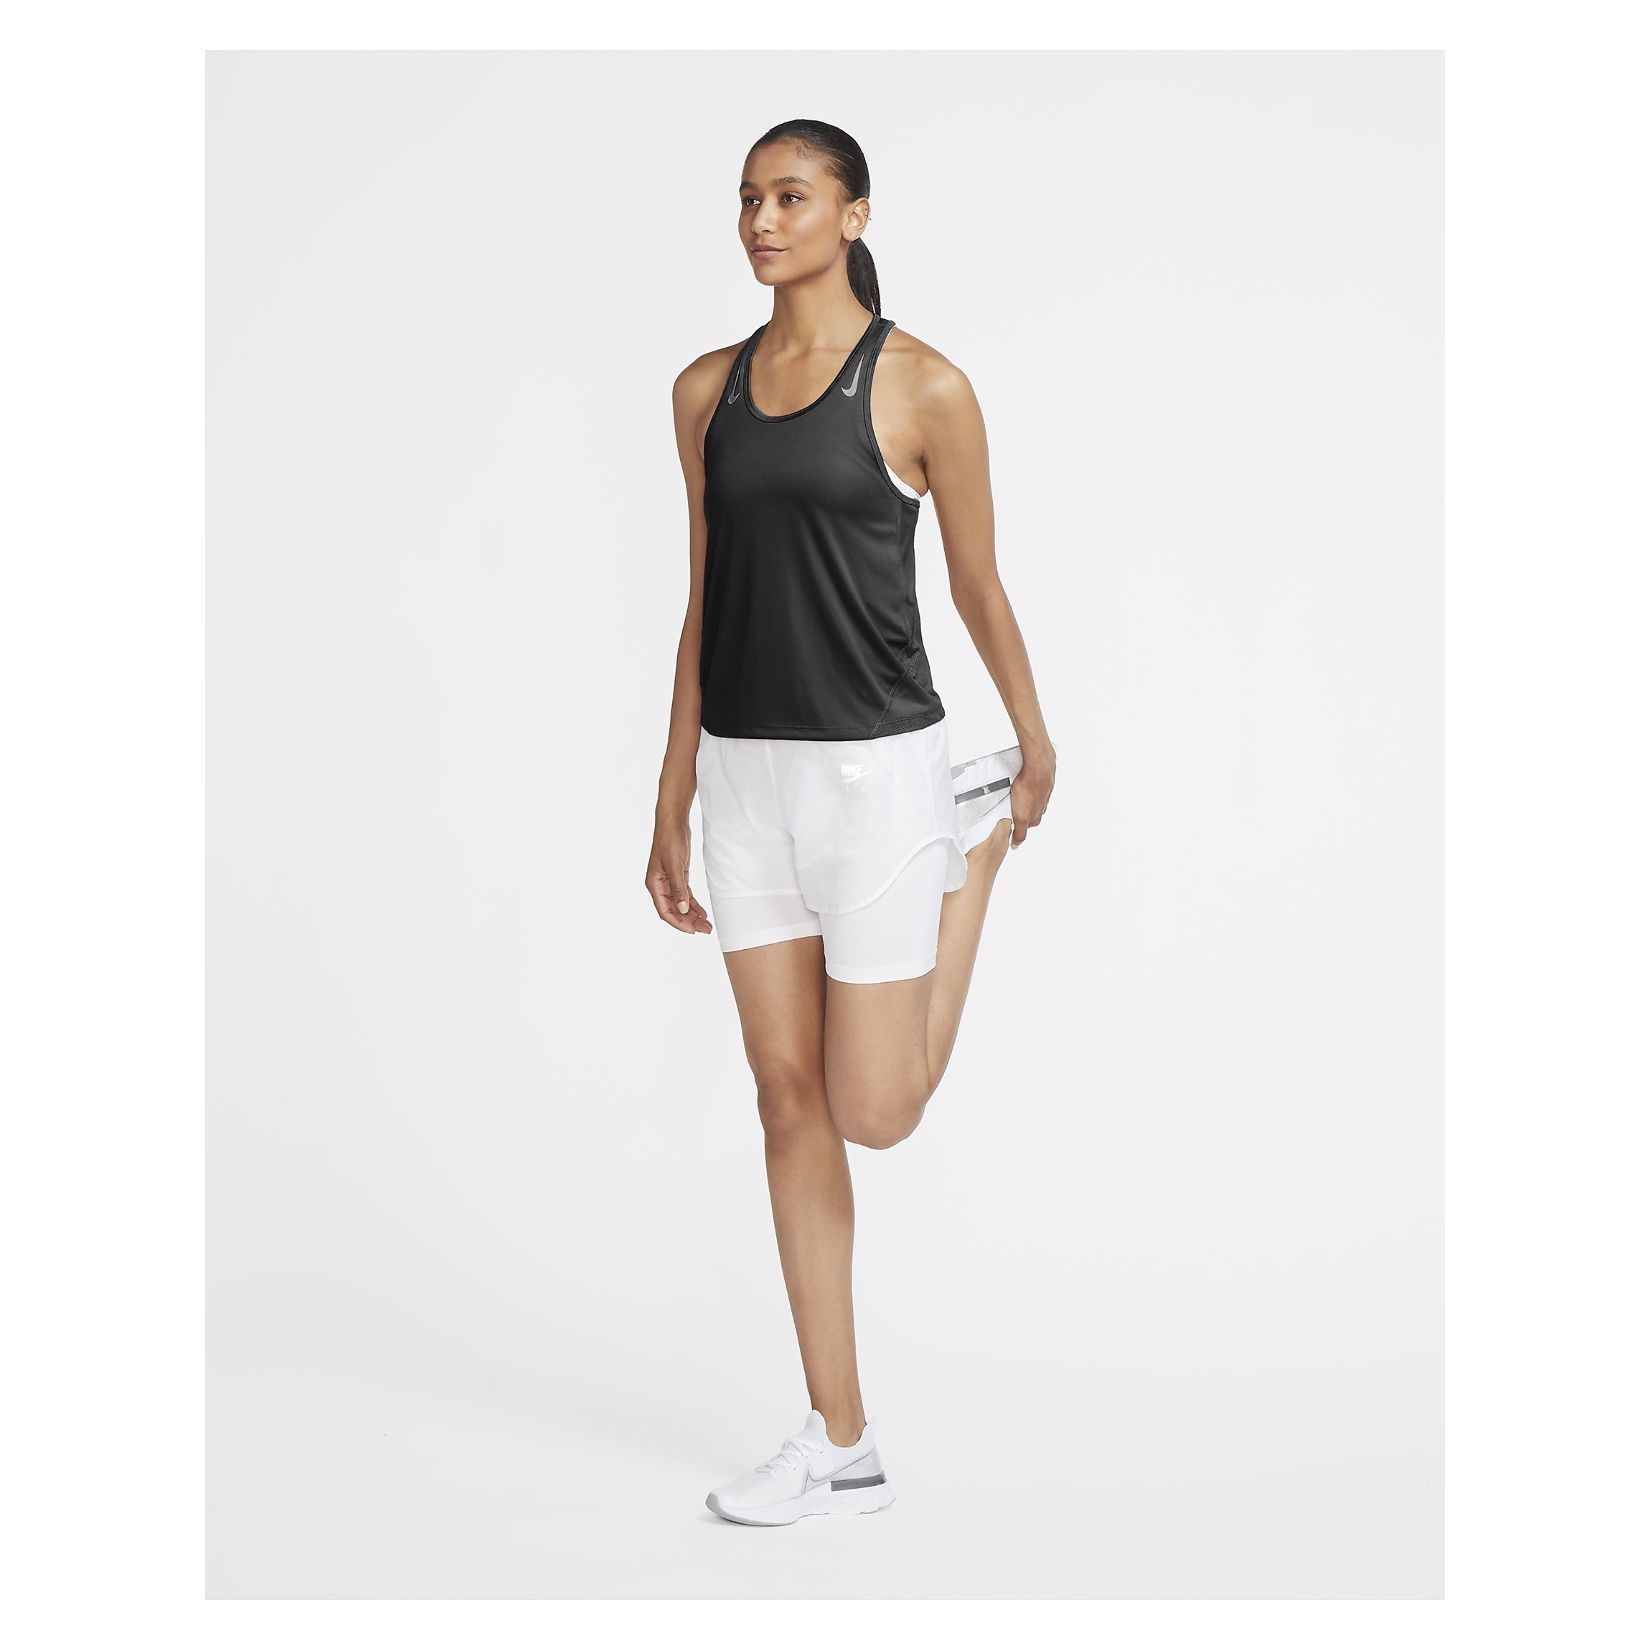 Nike Womens Miler Running Vest (W)